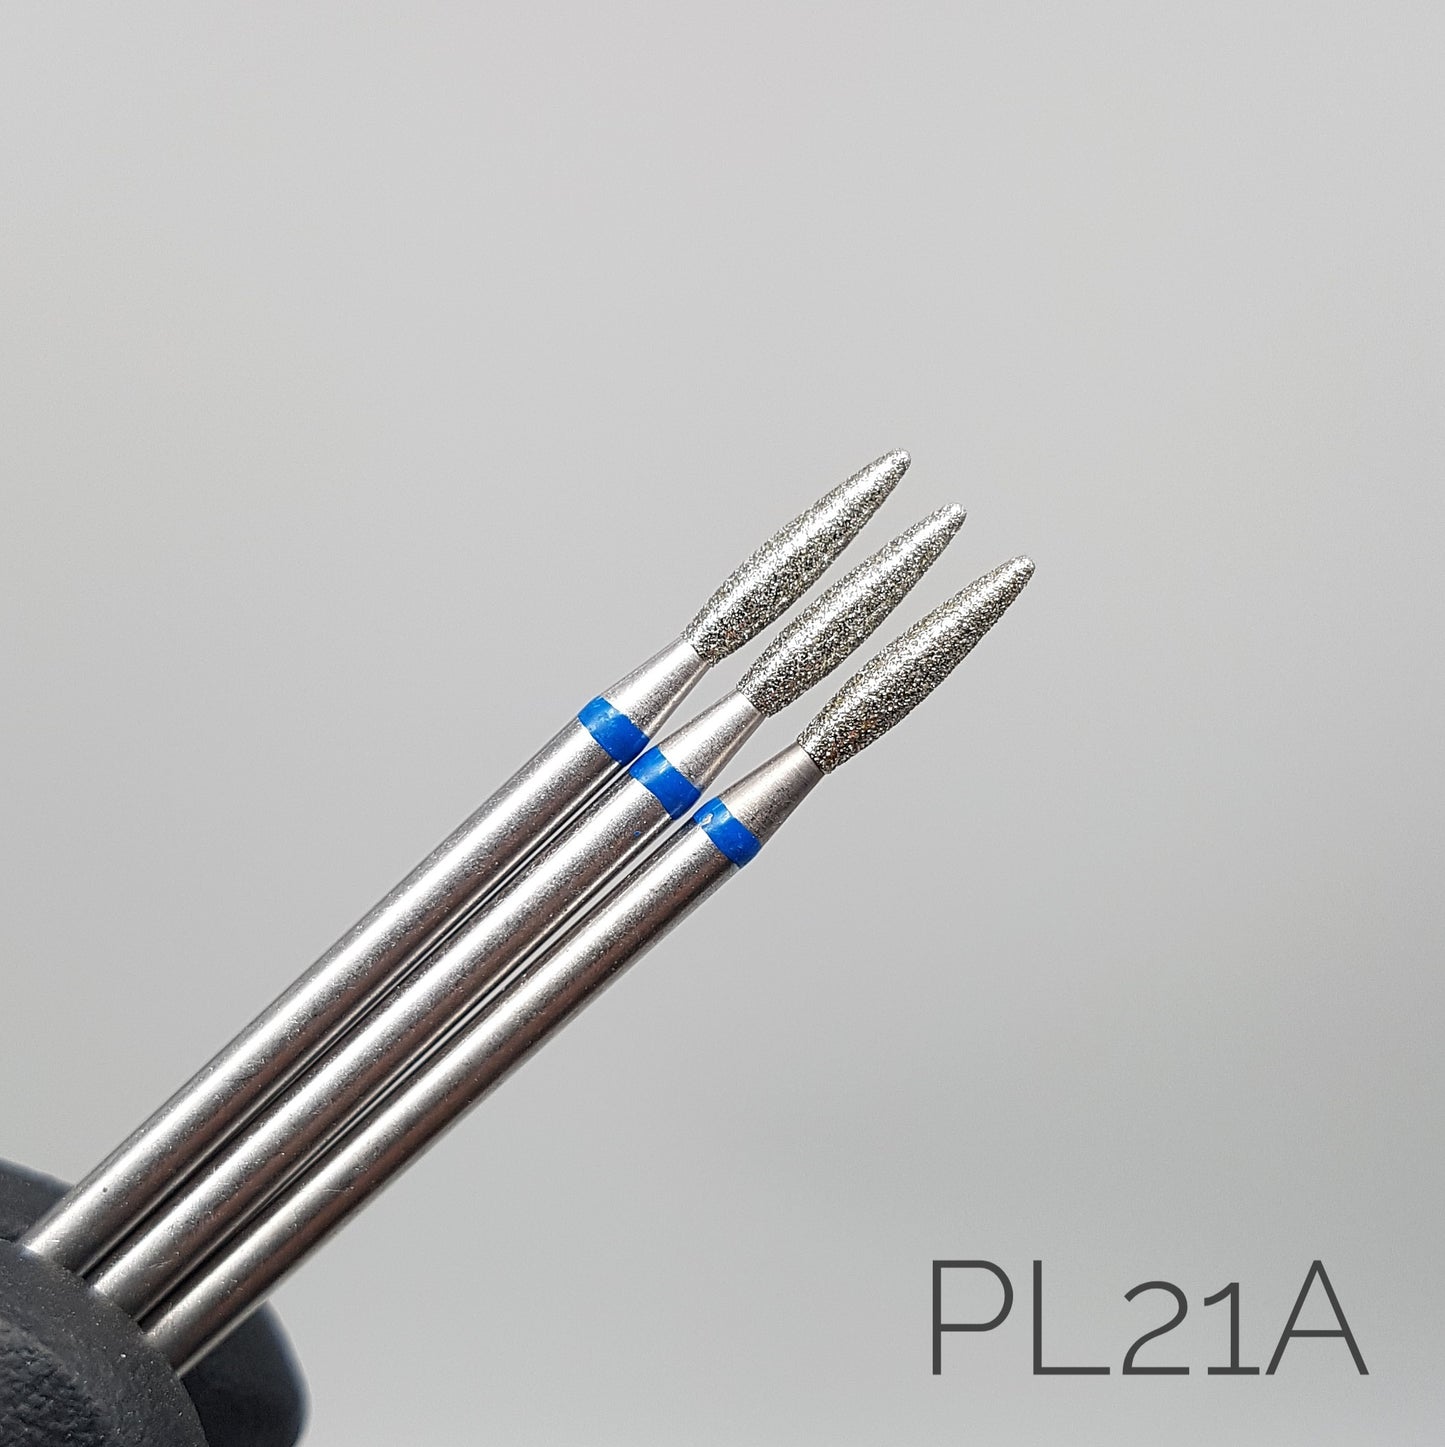 Fresa de diamante Llama sin punta. Azul, 2.1mm. PL21A